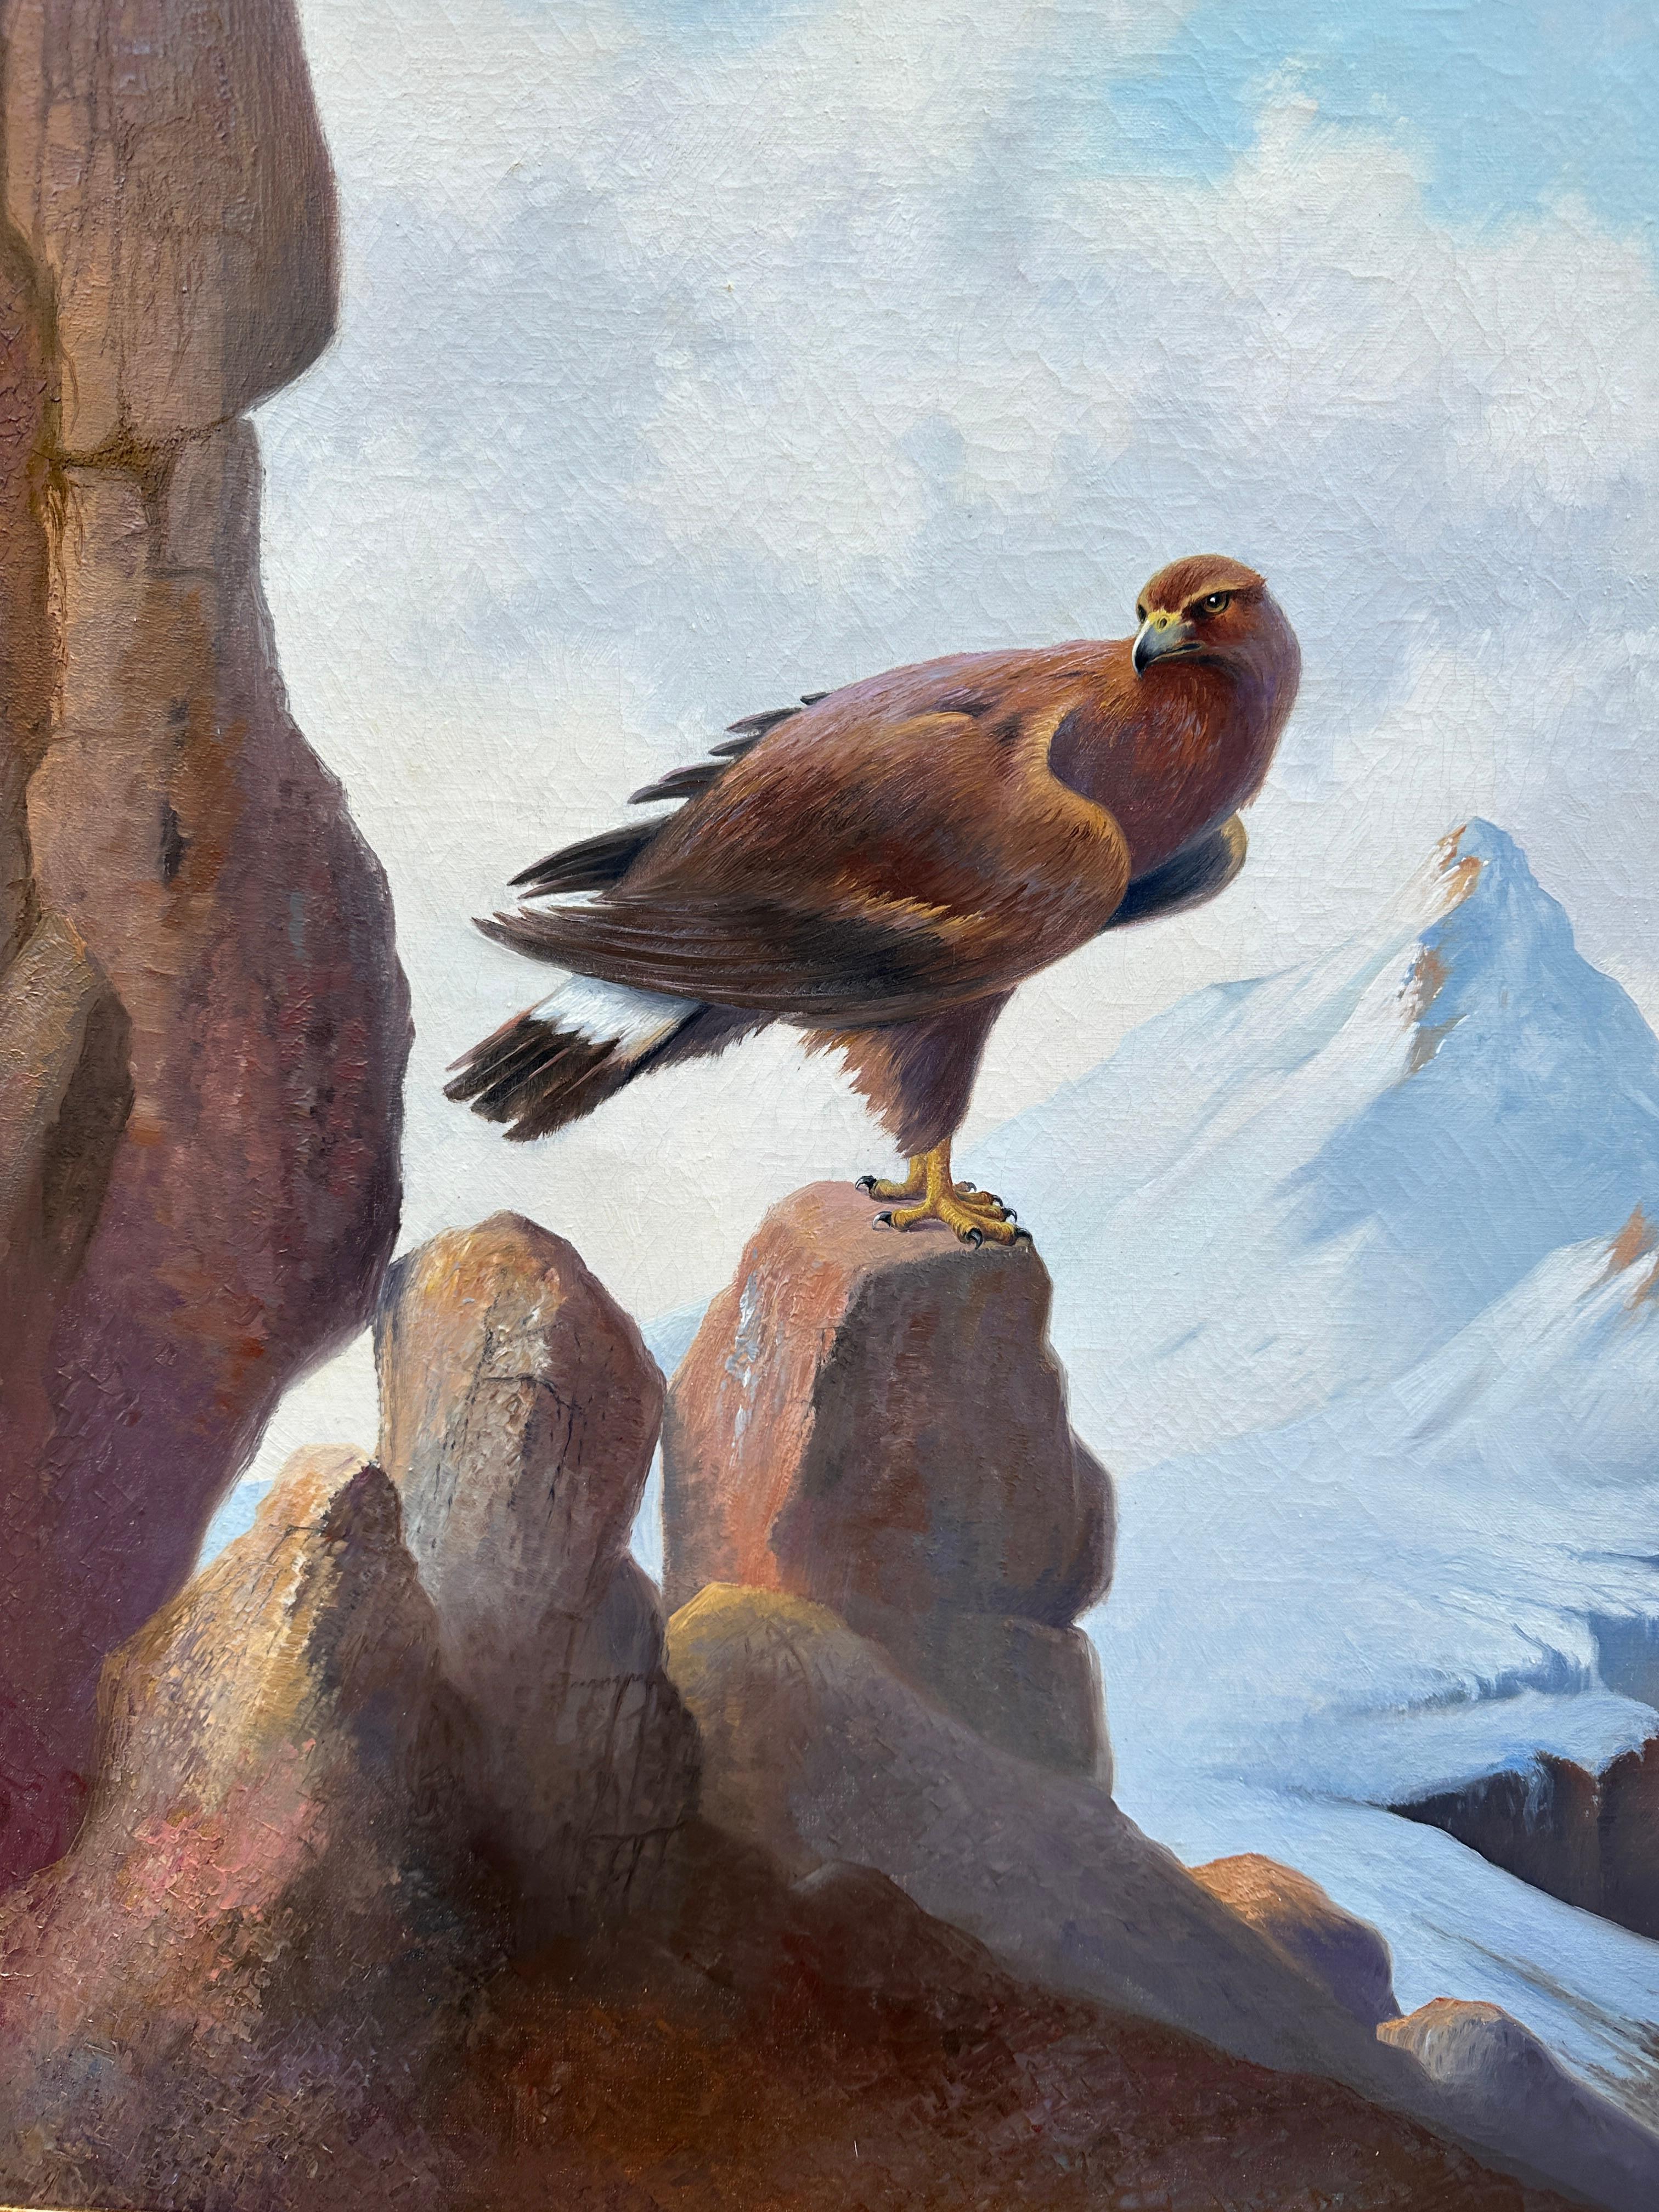 Porträt In einer Berglandschaft eines stehenden Adlers, in den Alpen.

Bauer malte Tiere, die oft in ihrer natürlichen Umgebung laufen, fliegen oder stehen. Seine Bilder, die stets von hoher Qualität sind, sind sehr begehrt.

Ein Gemälde von K. A.